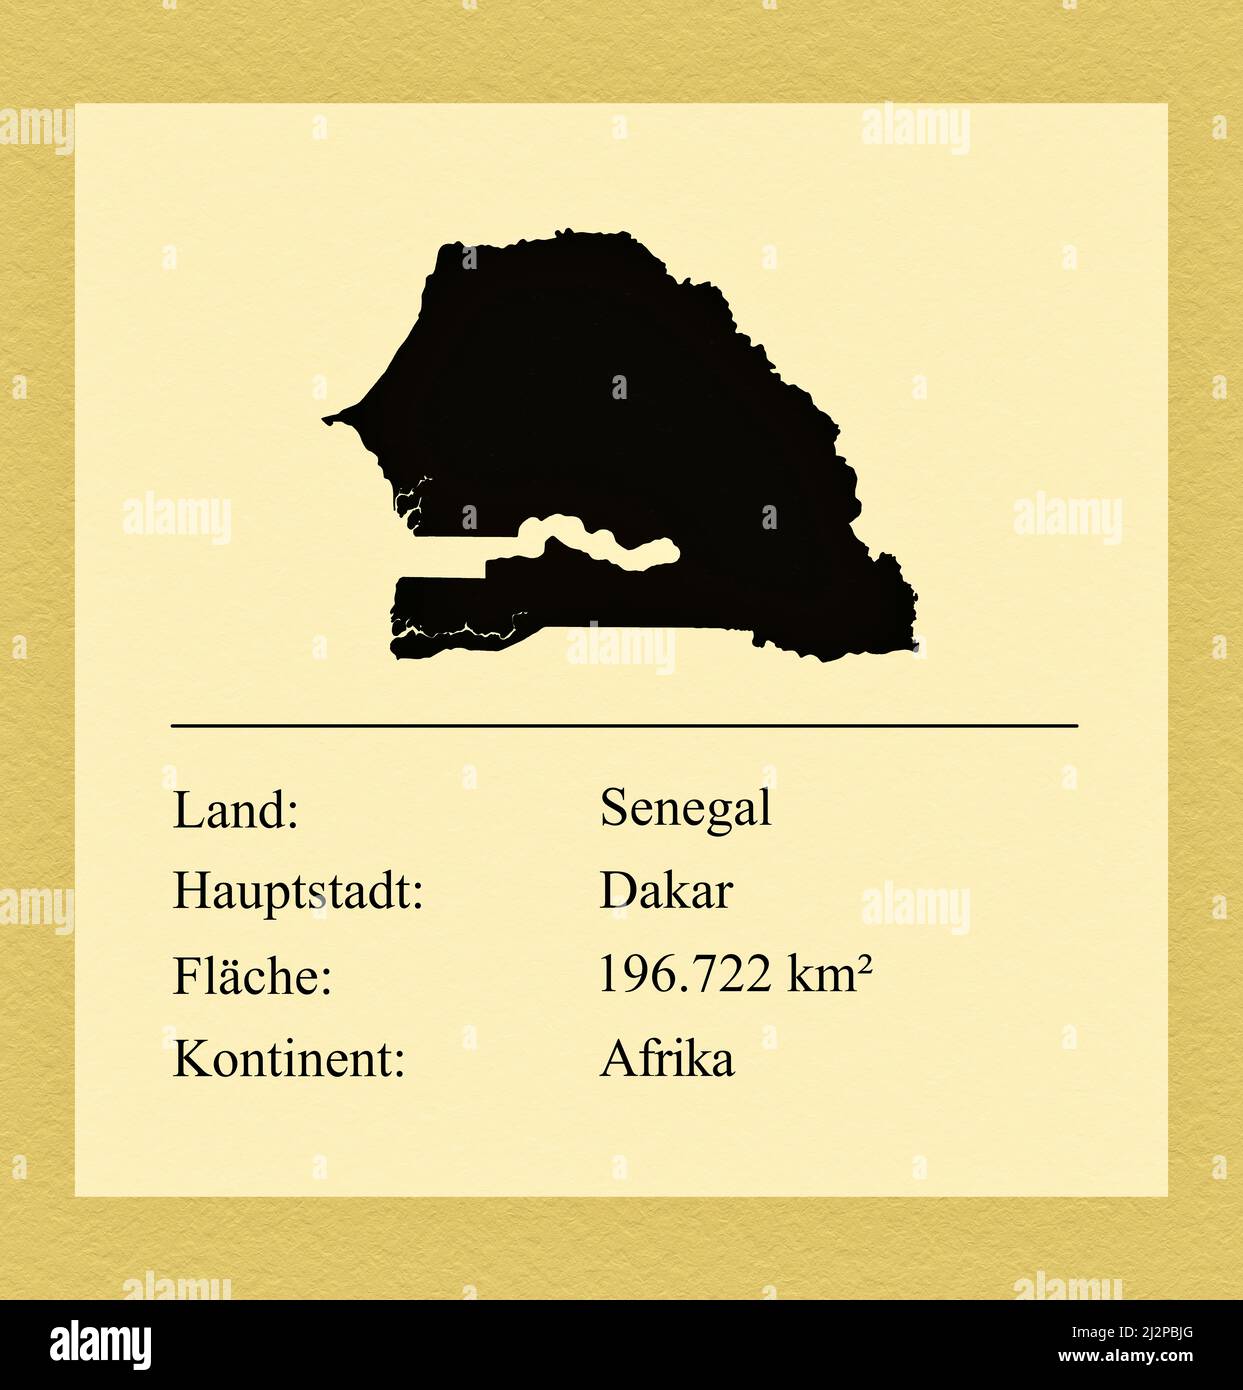 Umrisse des Landes Senegal, darunter ein kleiner Steckbrief mit Ländernamen, Hauptstadt, Fläche und Kontinent Foto de stock